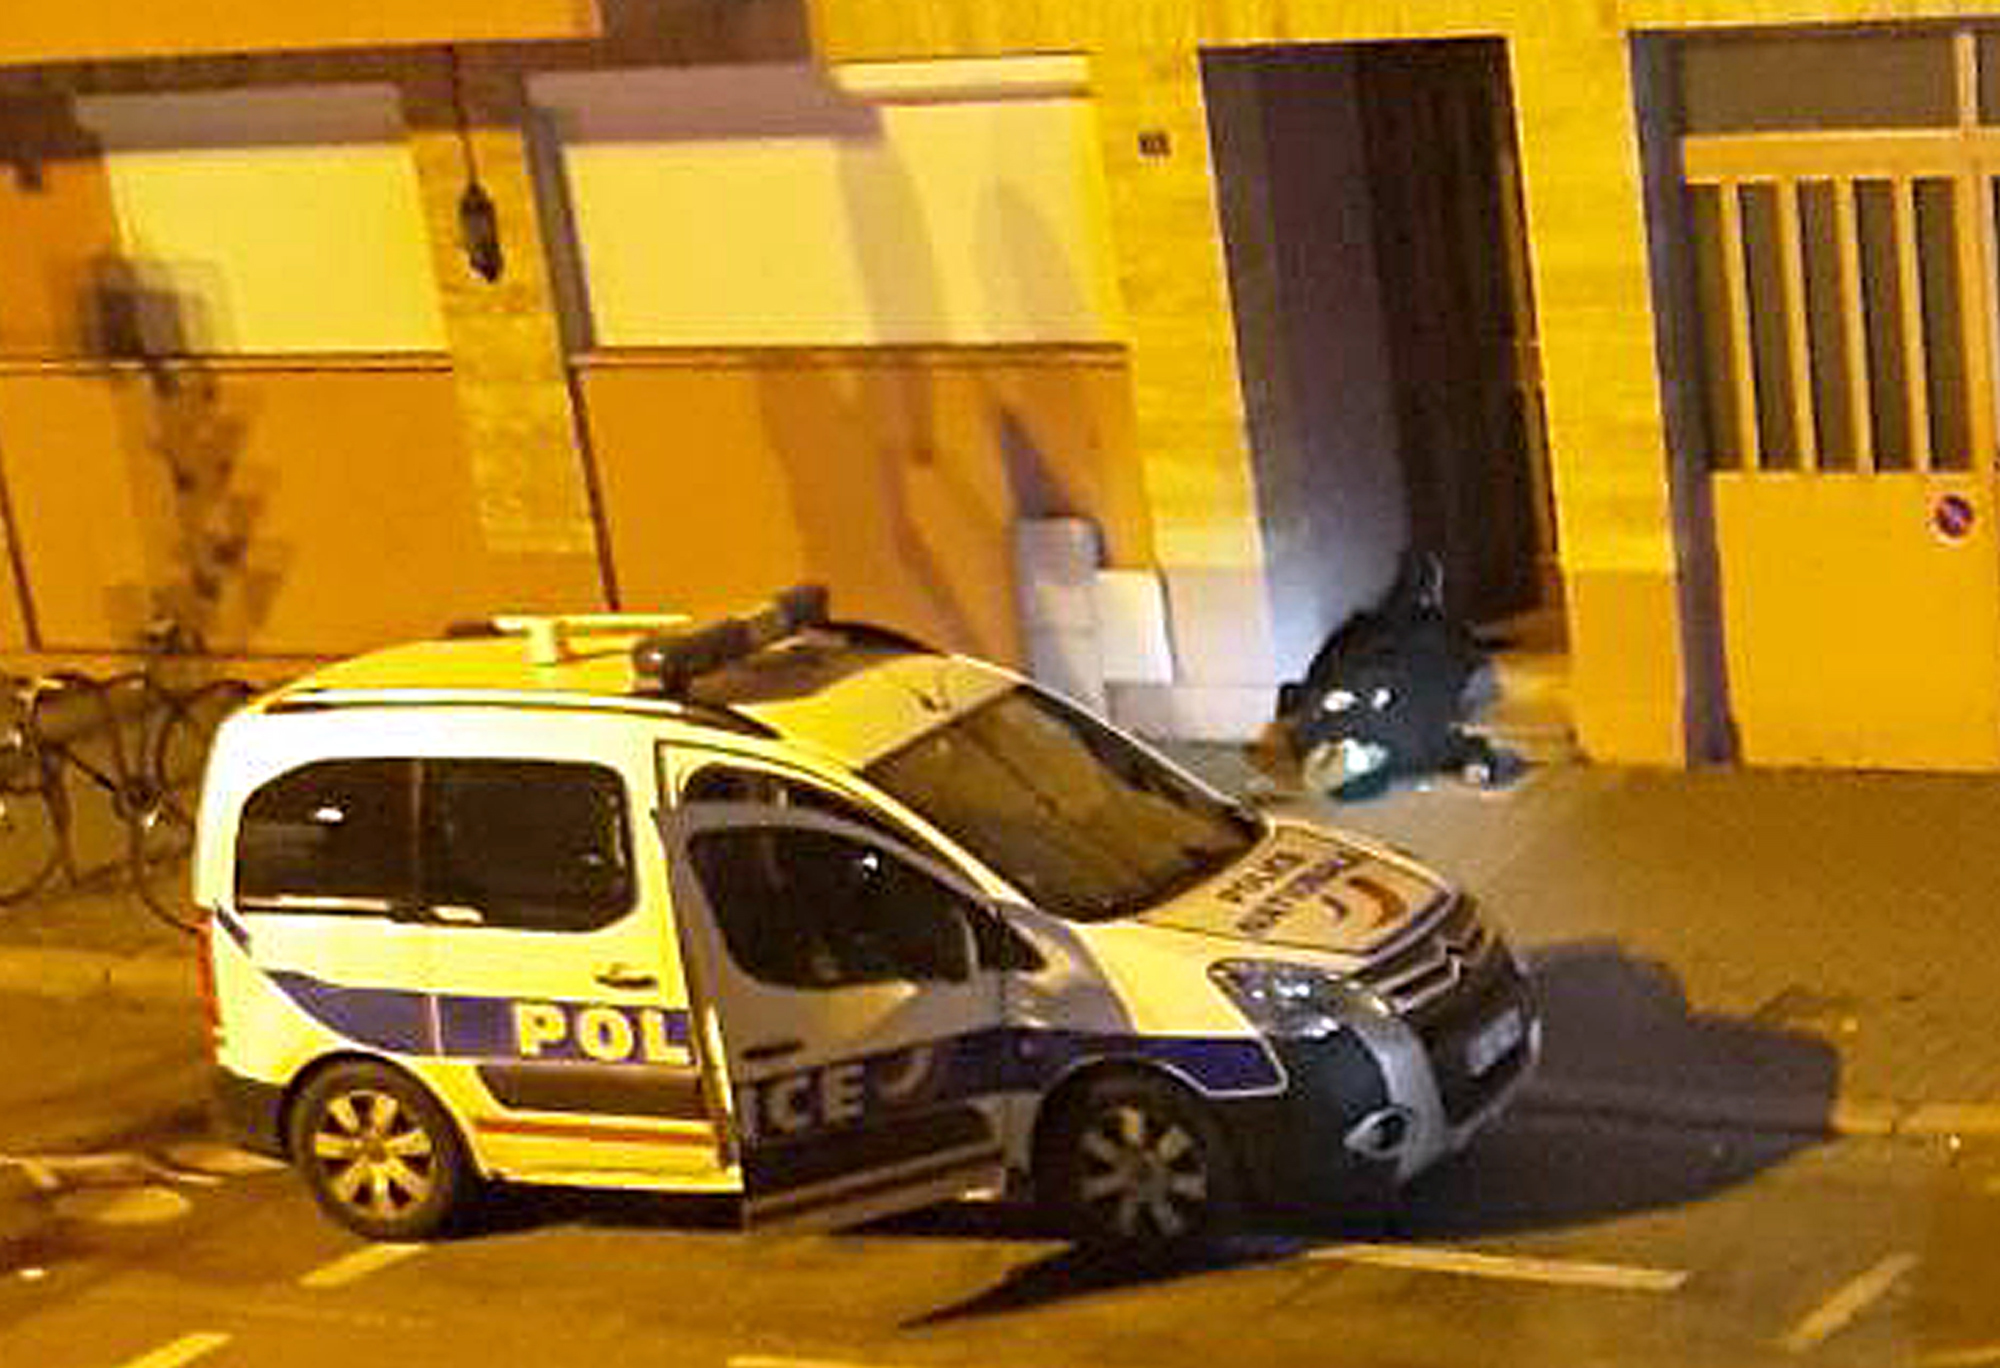 Policia Francesa continua la busqueda del atacante de Estrasburgo que mató 3 personas